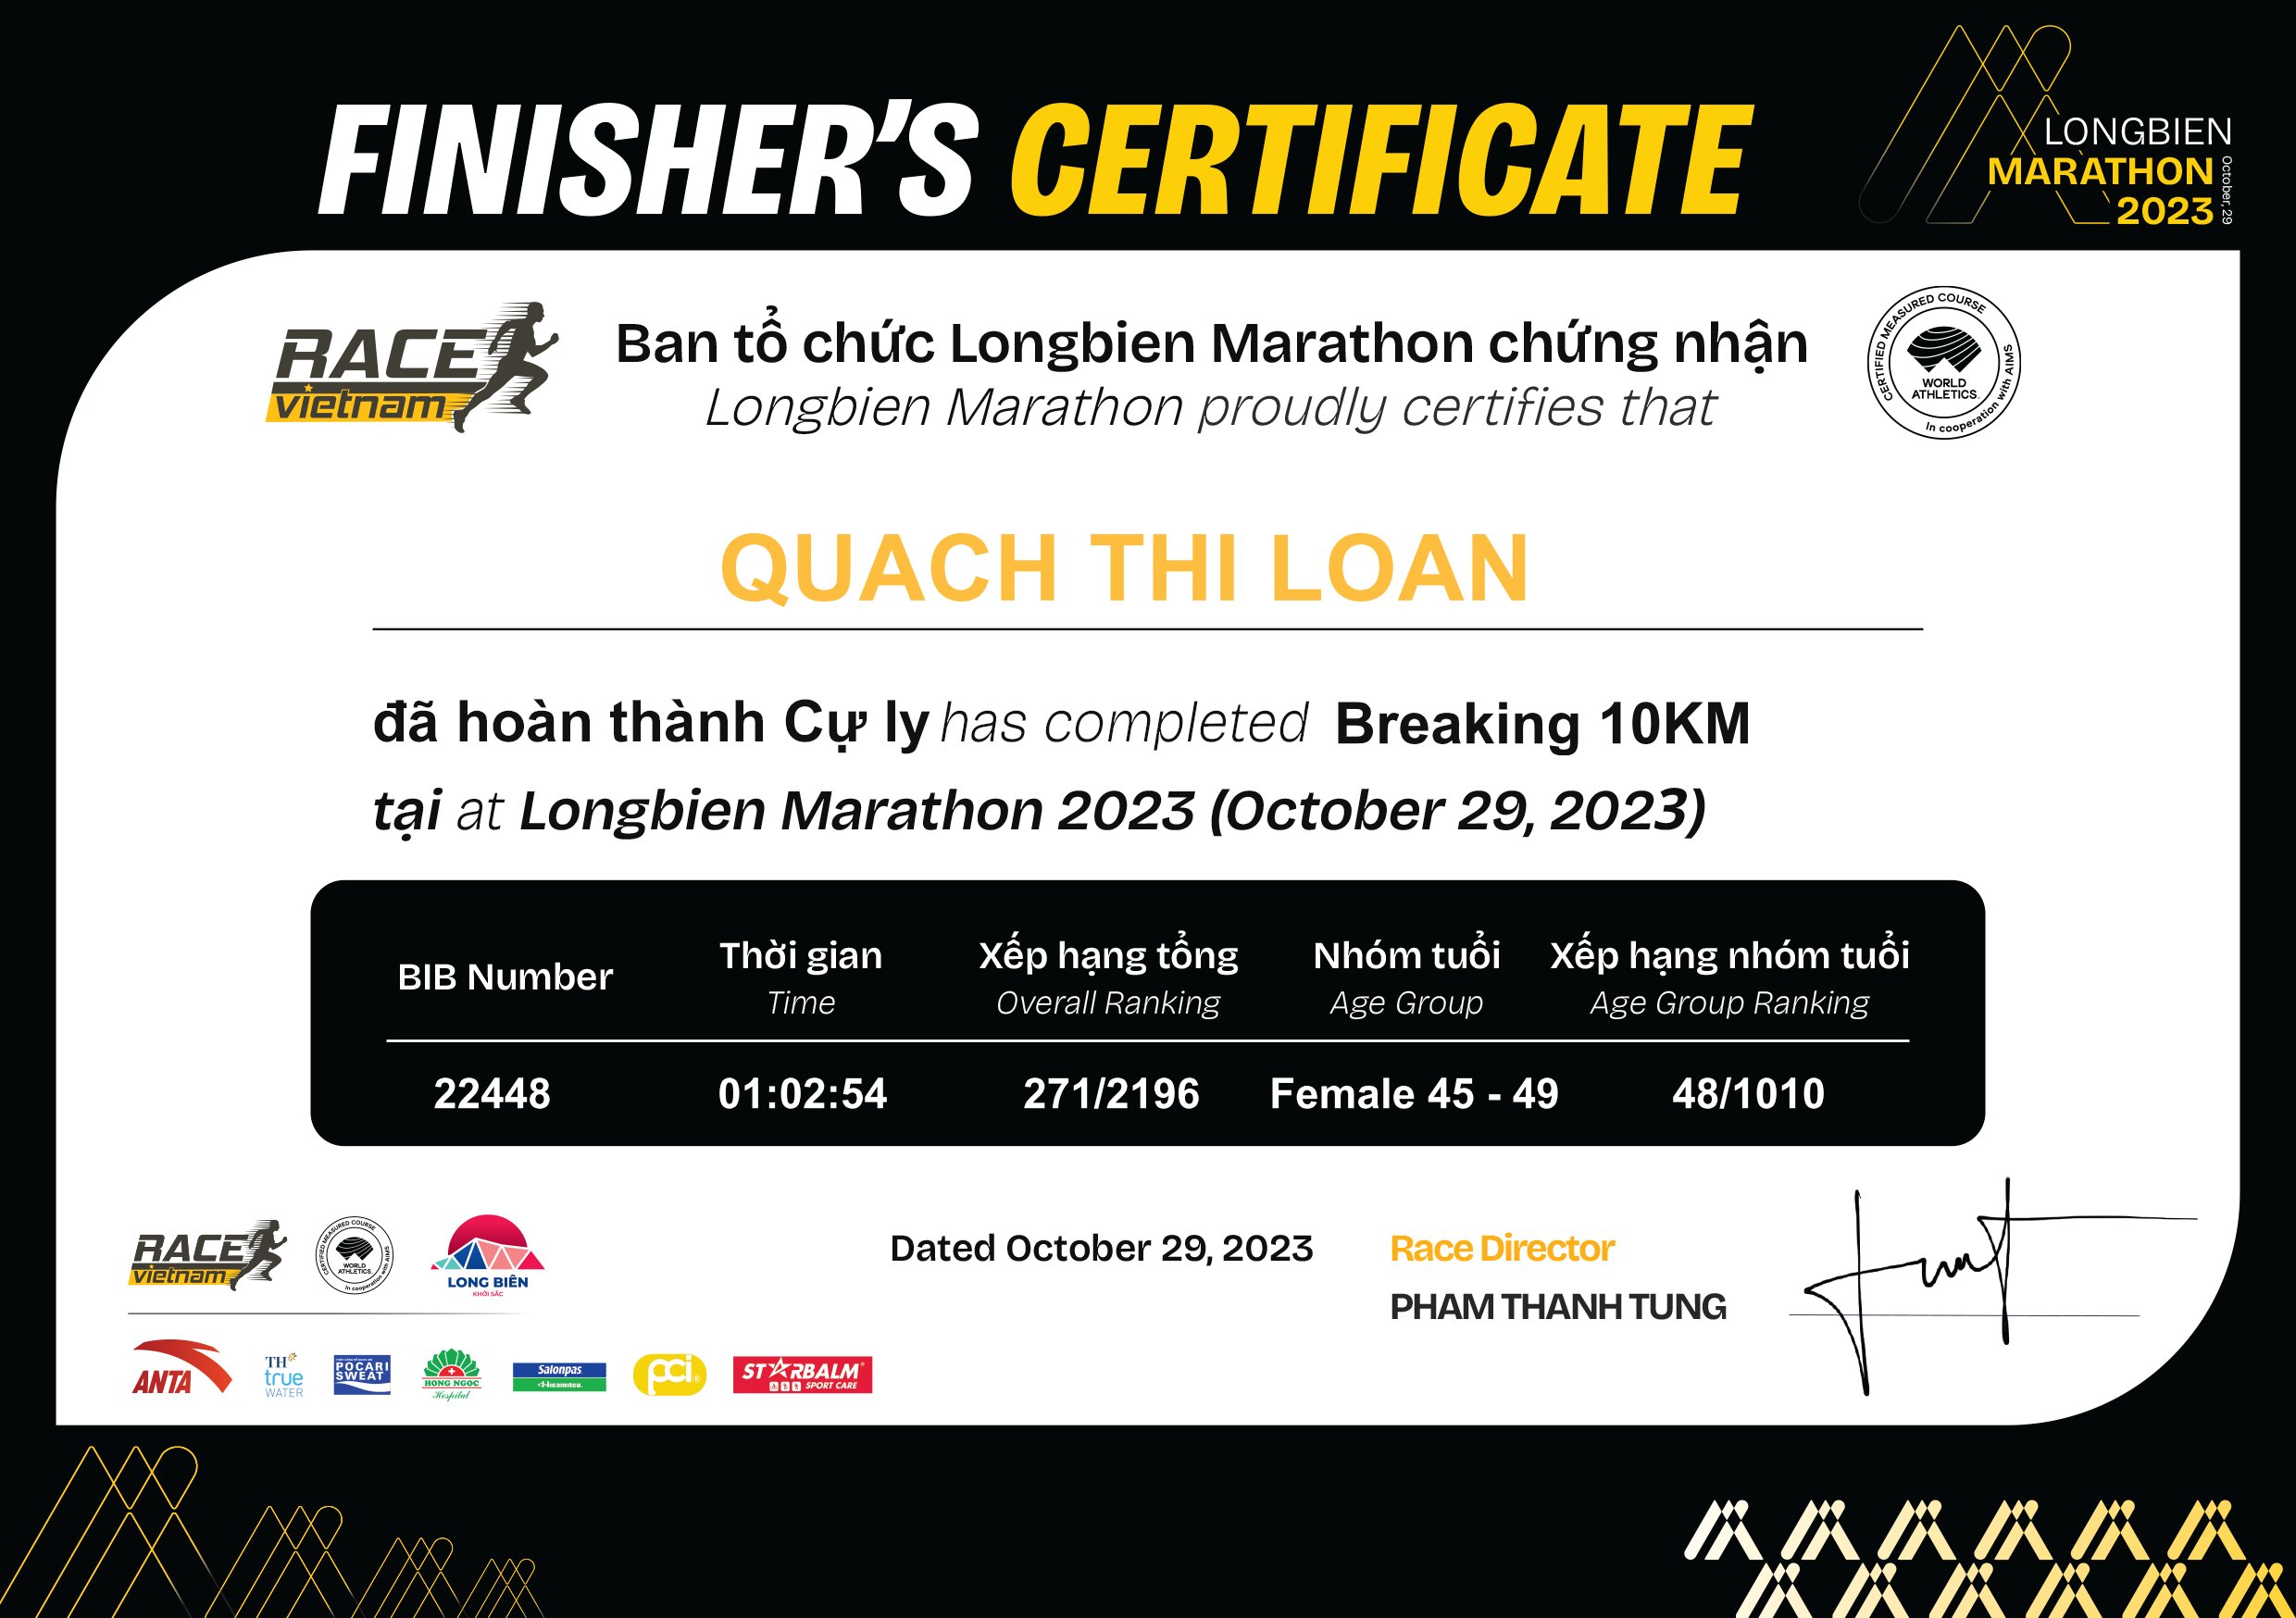 22448 - Quach Thi Loan